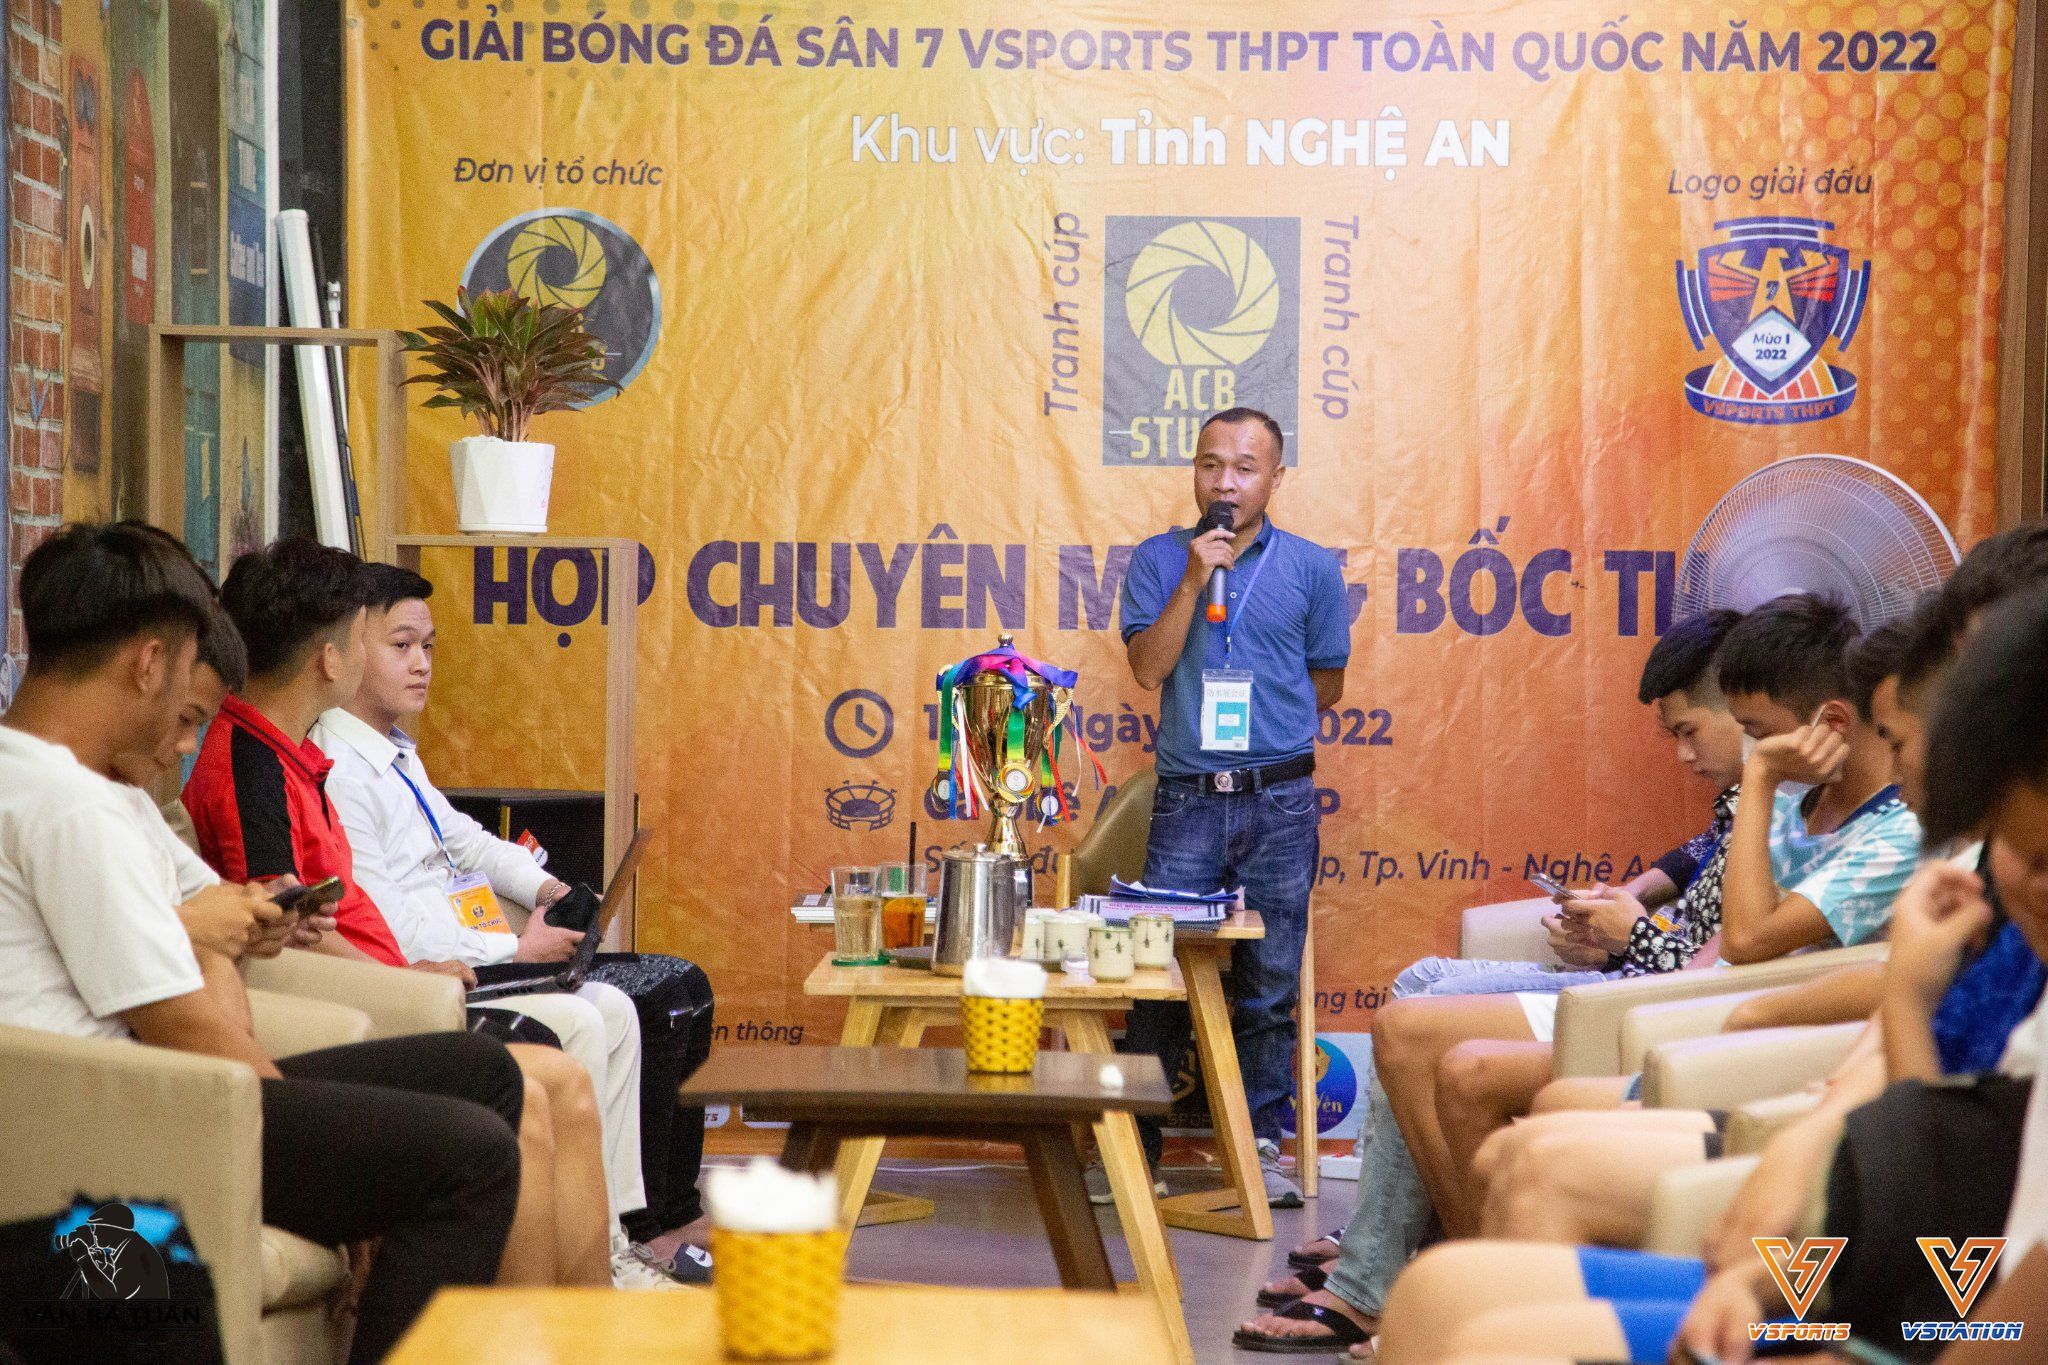 Vsports THPT tỉnh Nghệ An